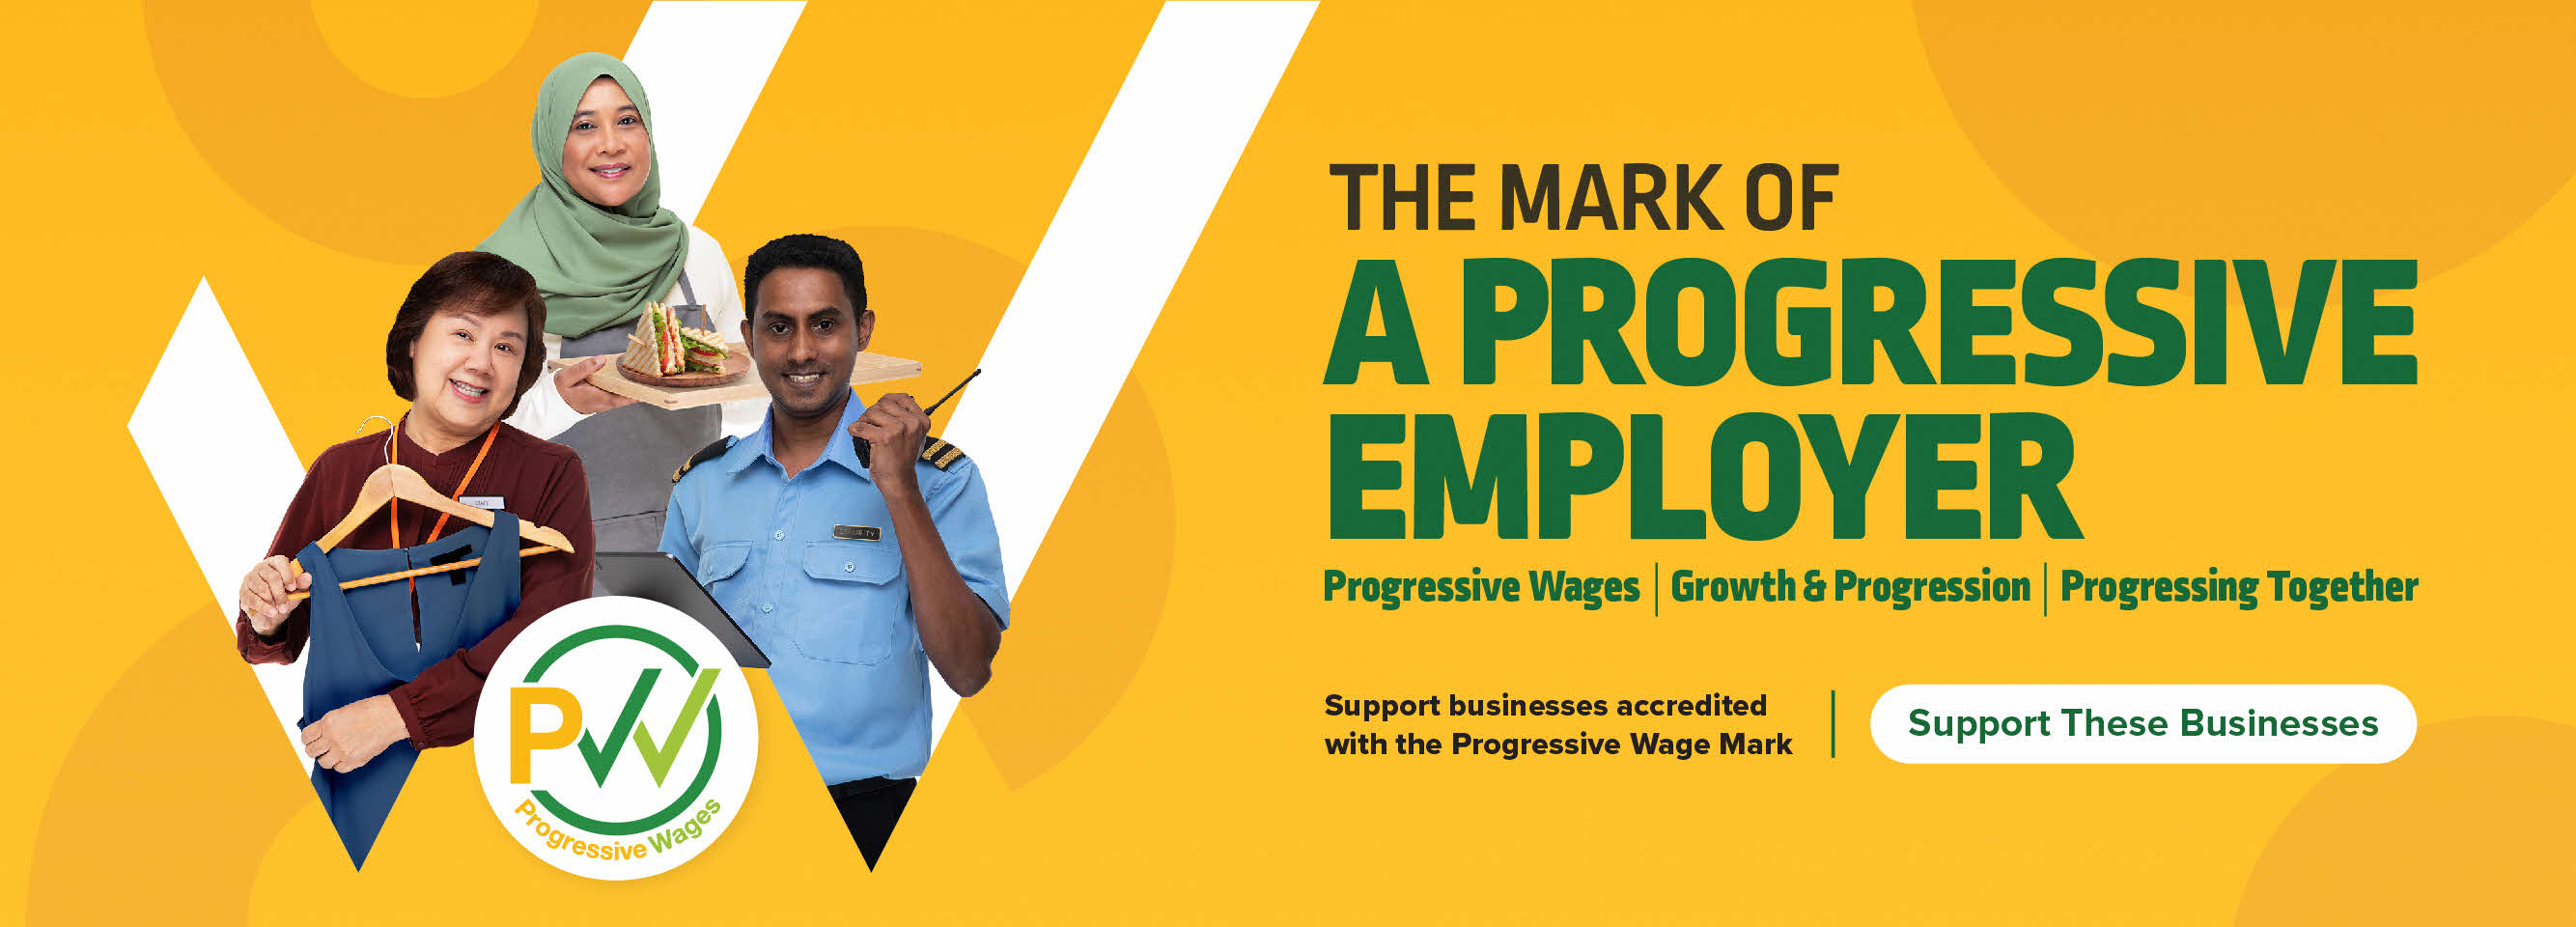 Progressive Wage Mark banner - The mark of a progressive employer